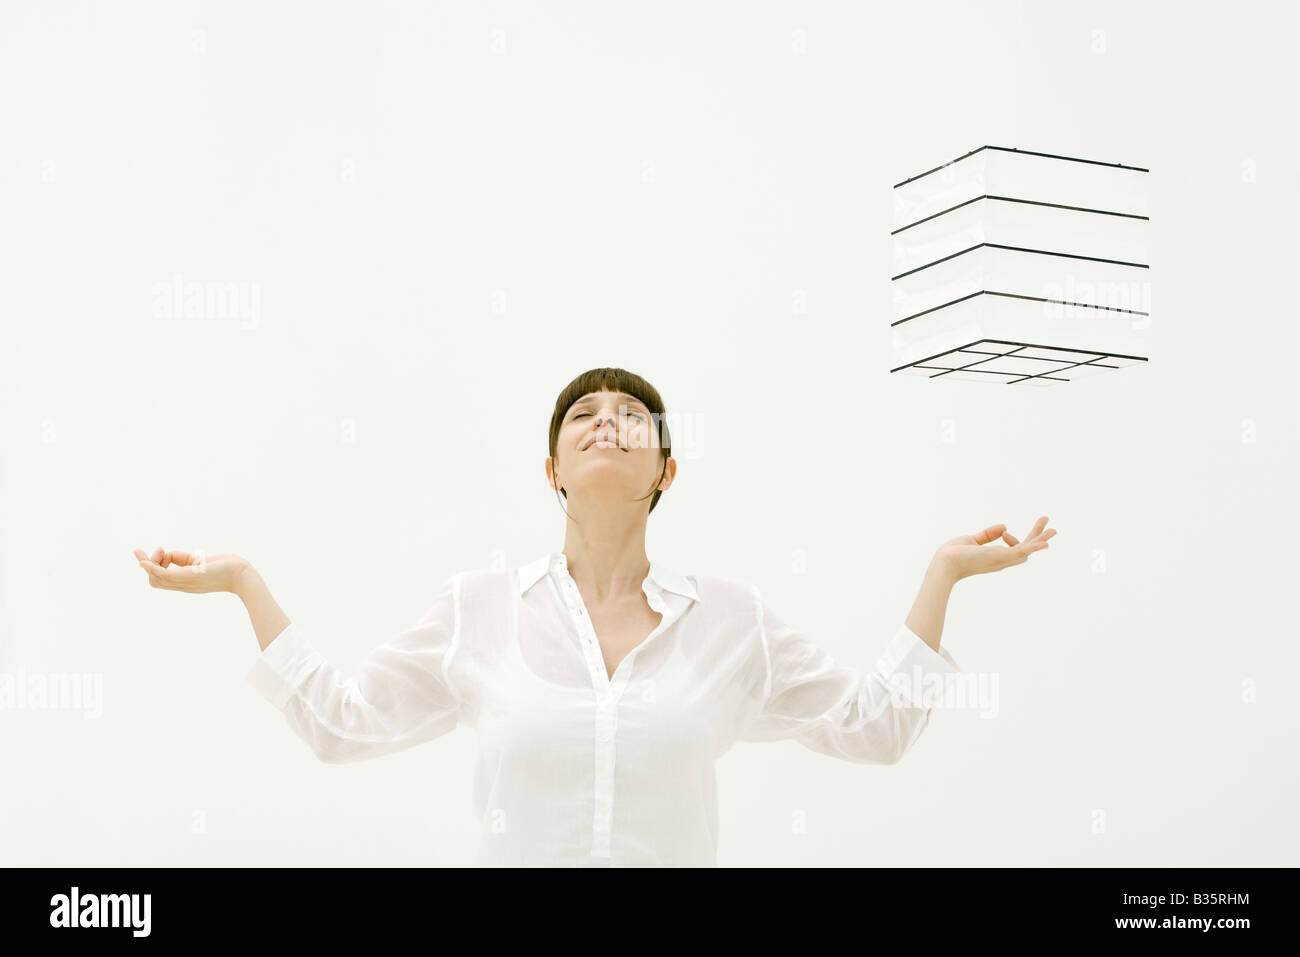 Frau, meditieren, Cube, schwebt in der Luft über ihre linke Hand, Kopf nach hinten, Augen geschlossen Stockfoto